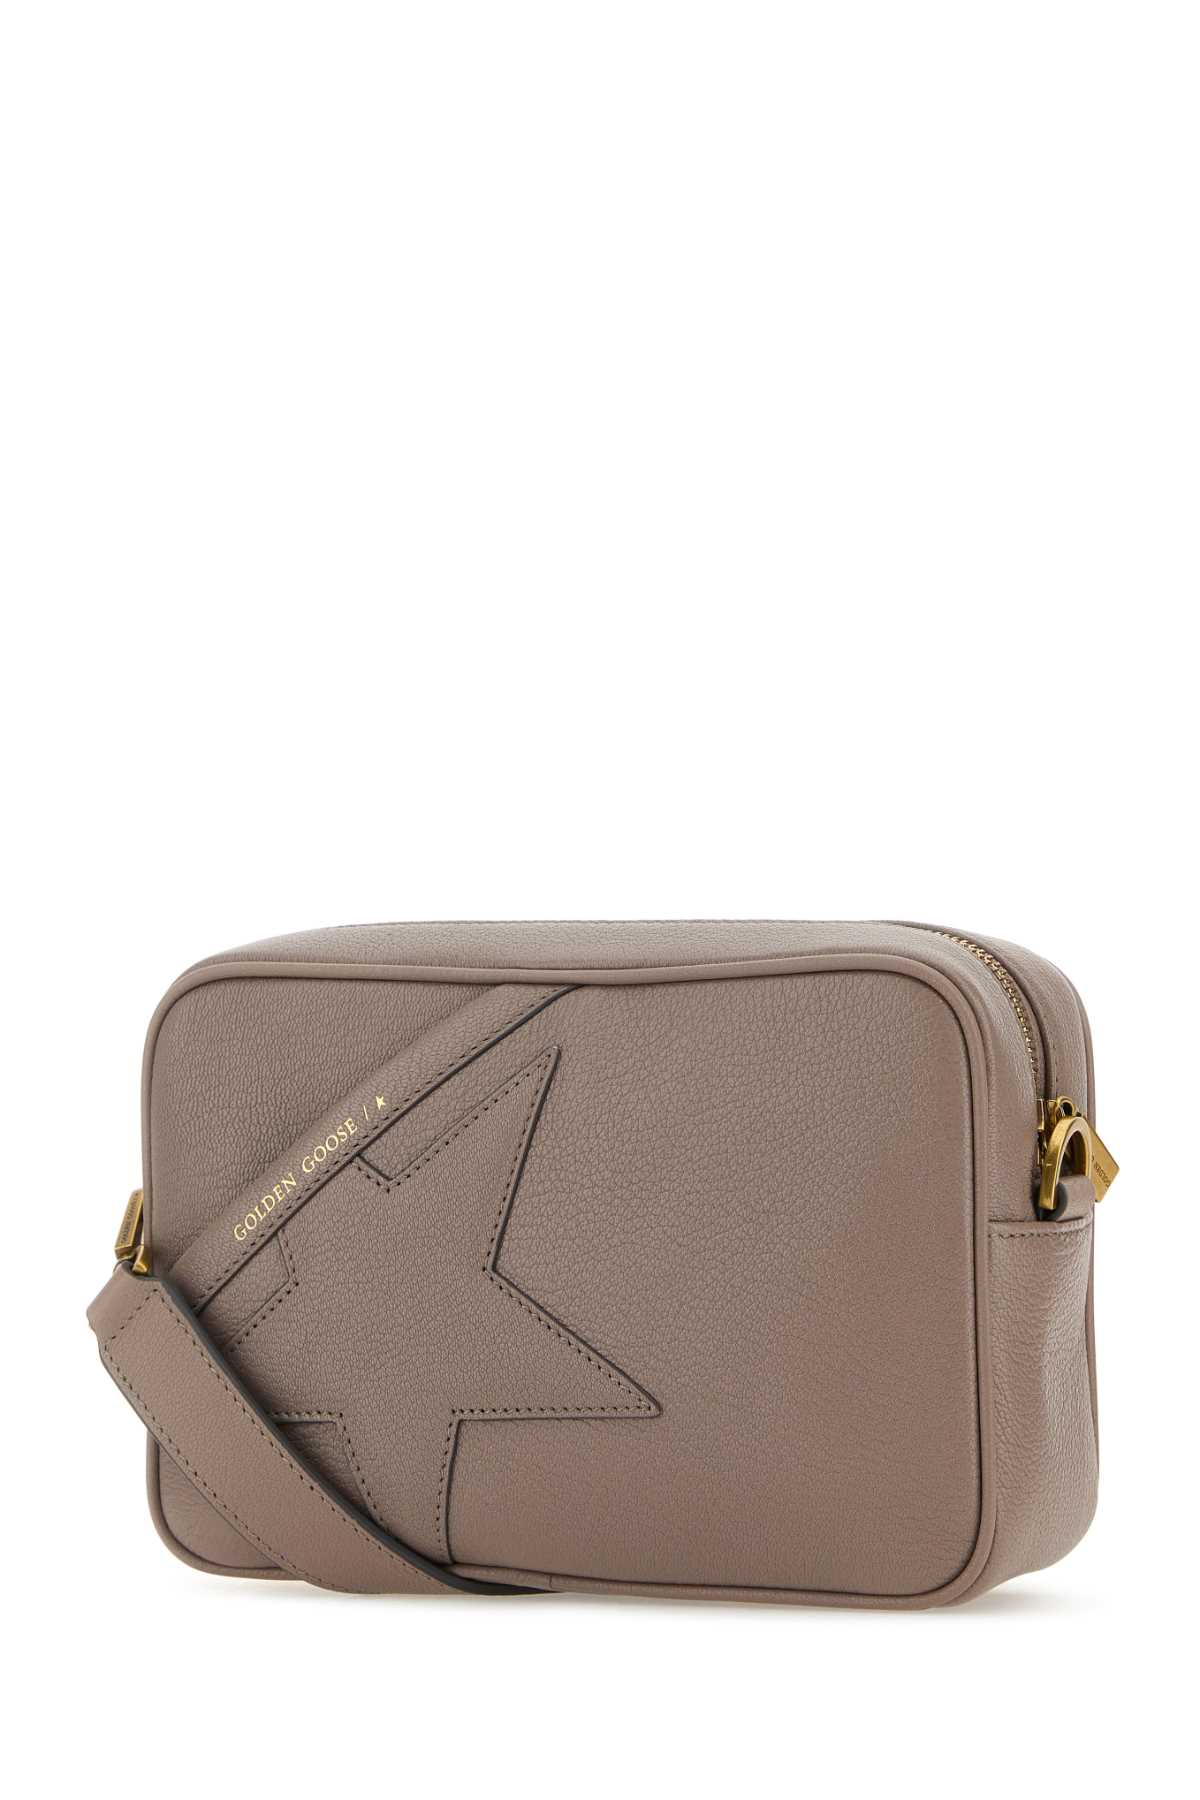 Shop Golden Goose Antiqued Pink Leather Star Crossbody Bag In Ash